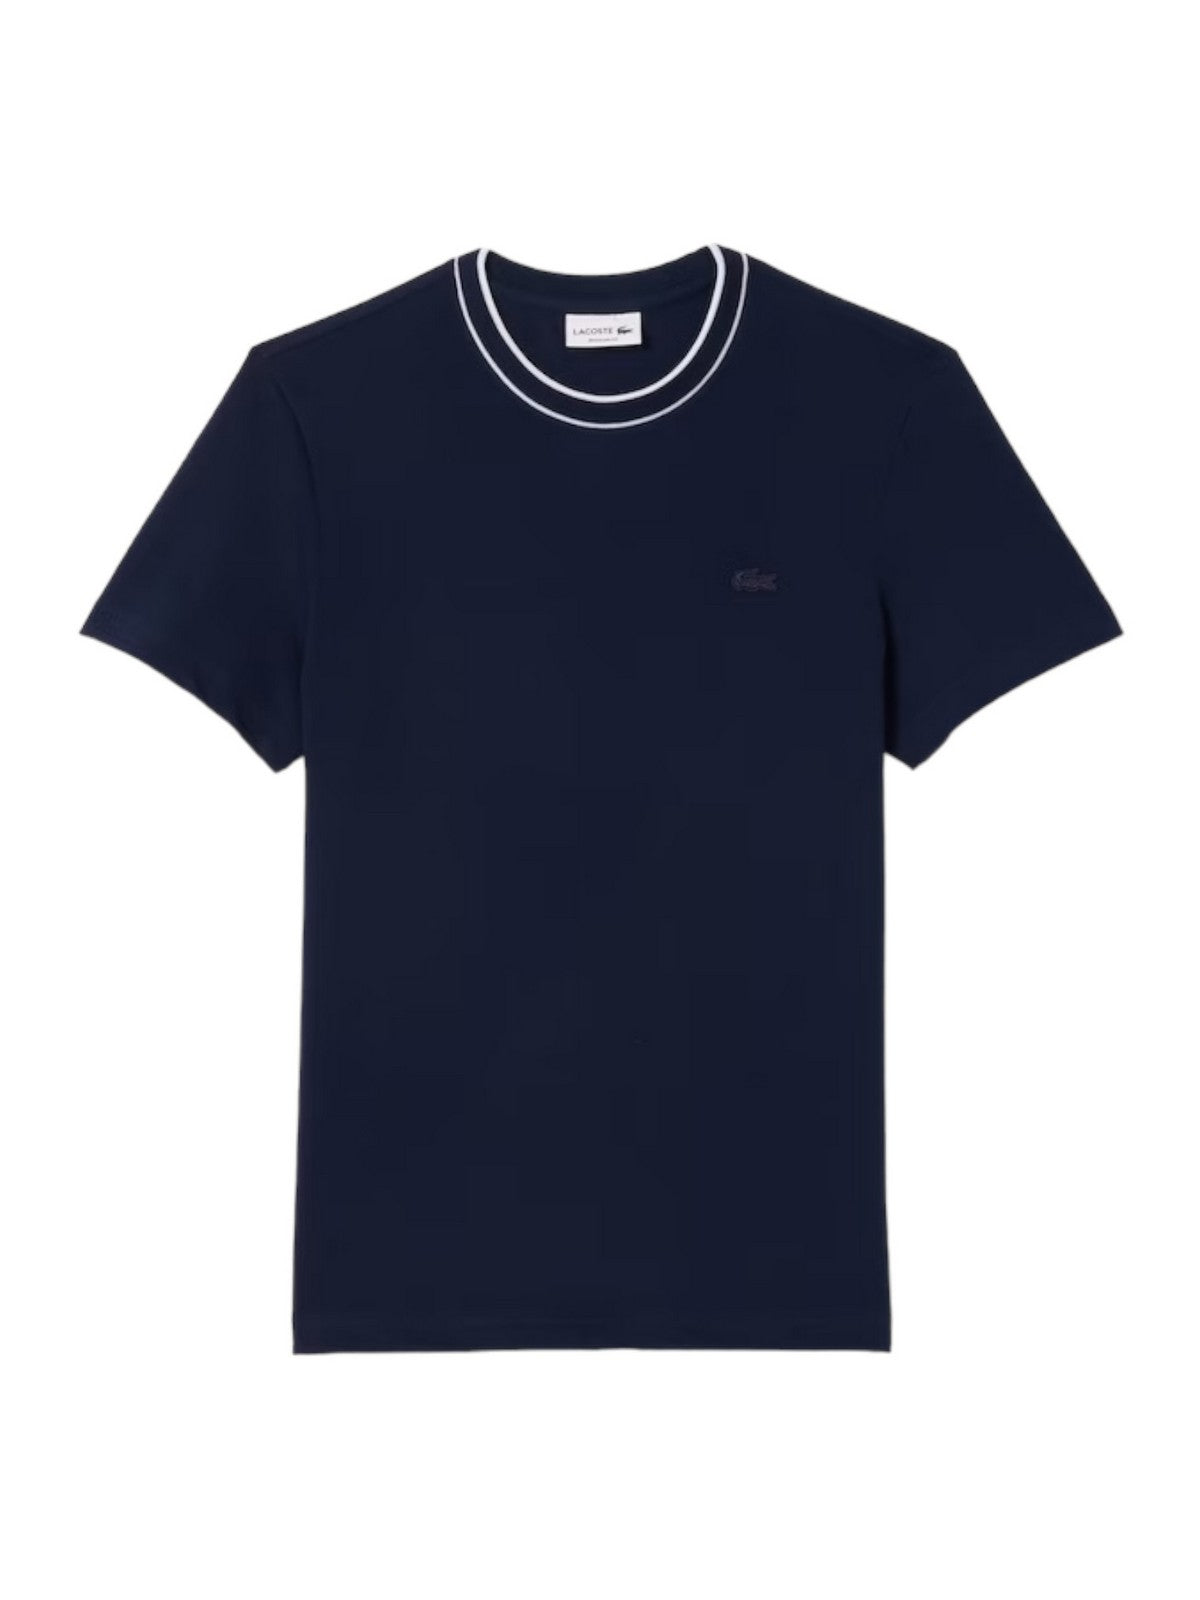 LACOSTE T-Shirt et Polo Hommes TH8174 166 Bleu